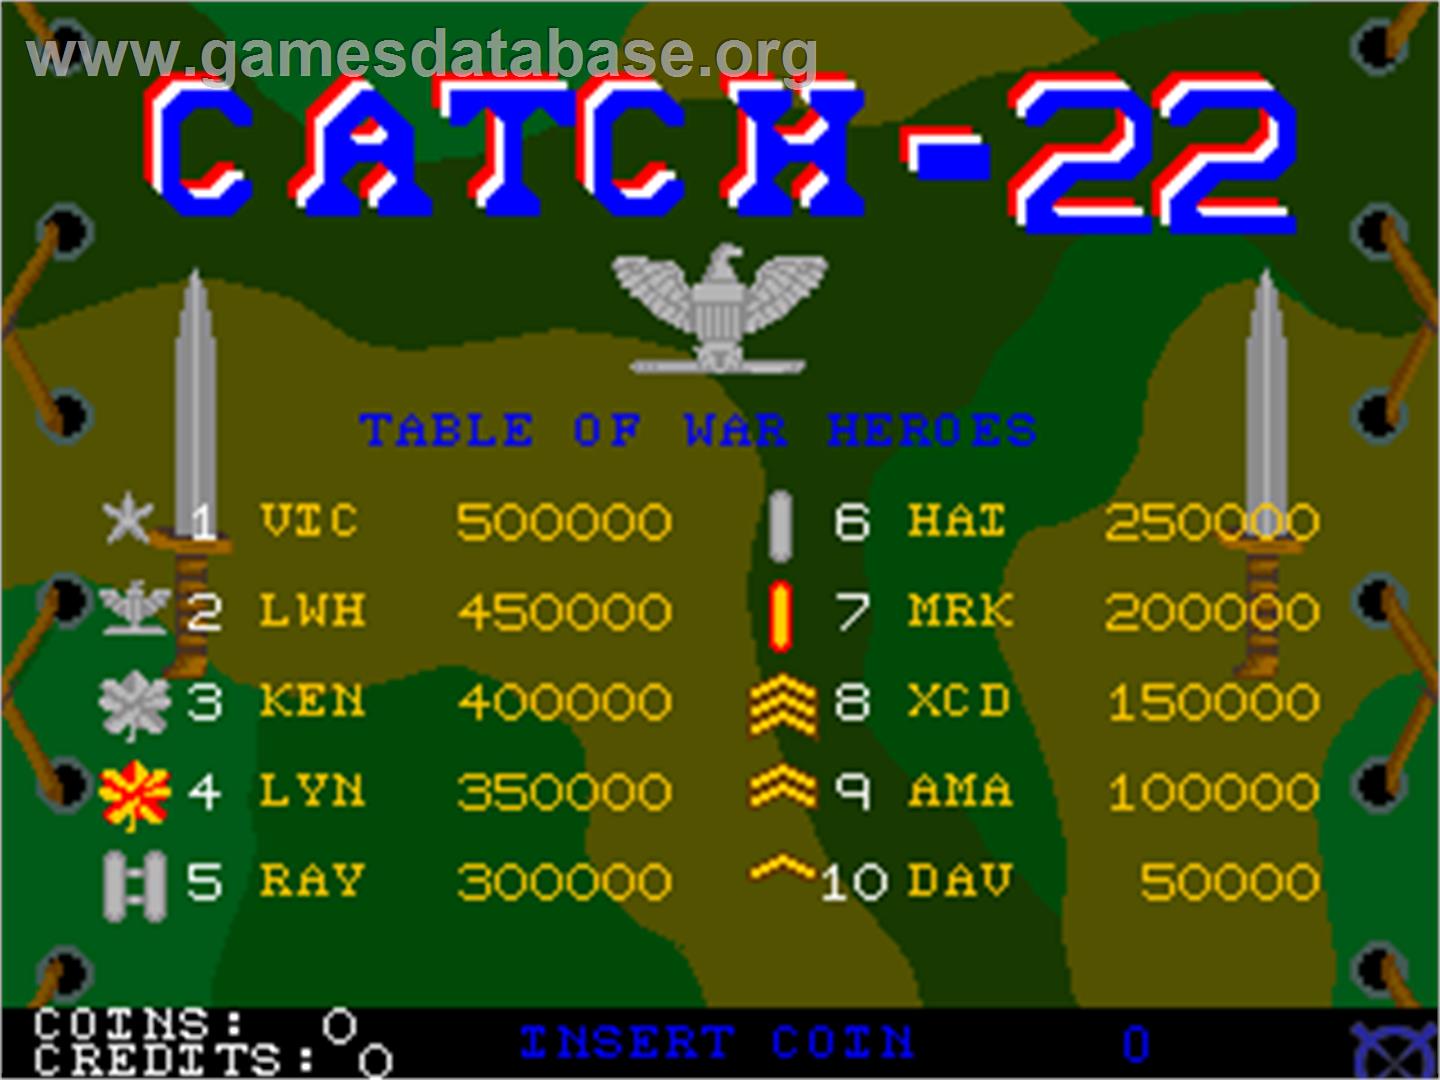 Catch-22 - Arcade - Artwork - High Score Screen